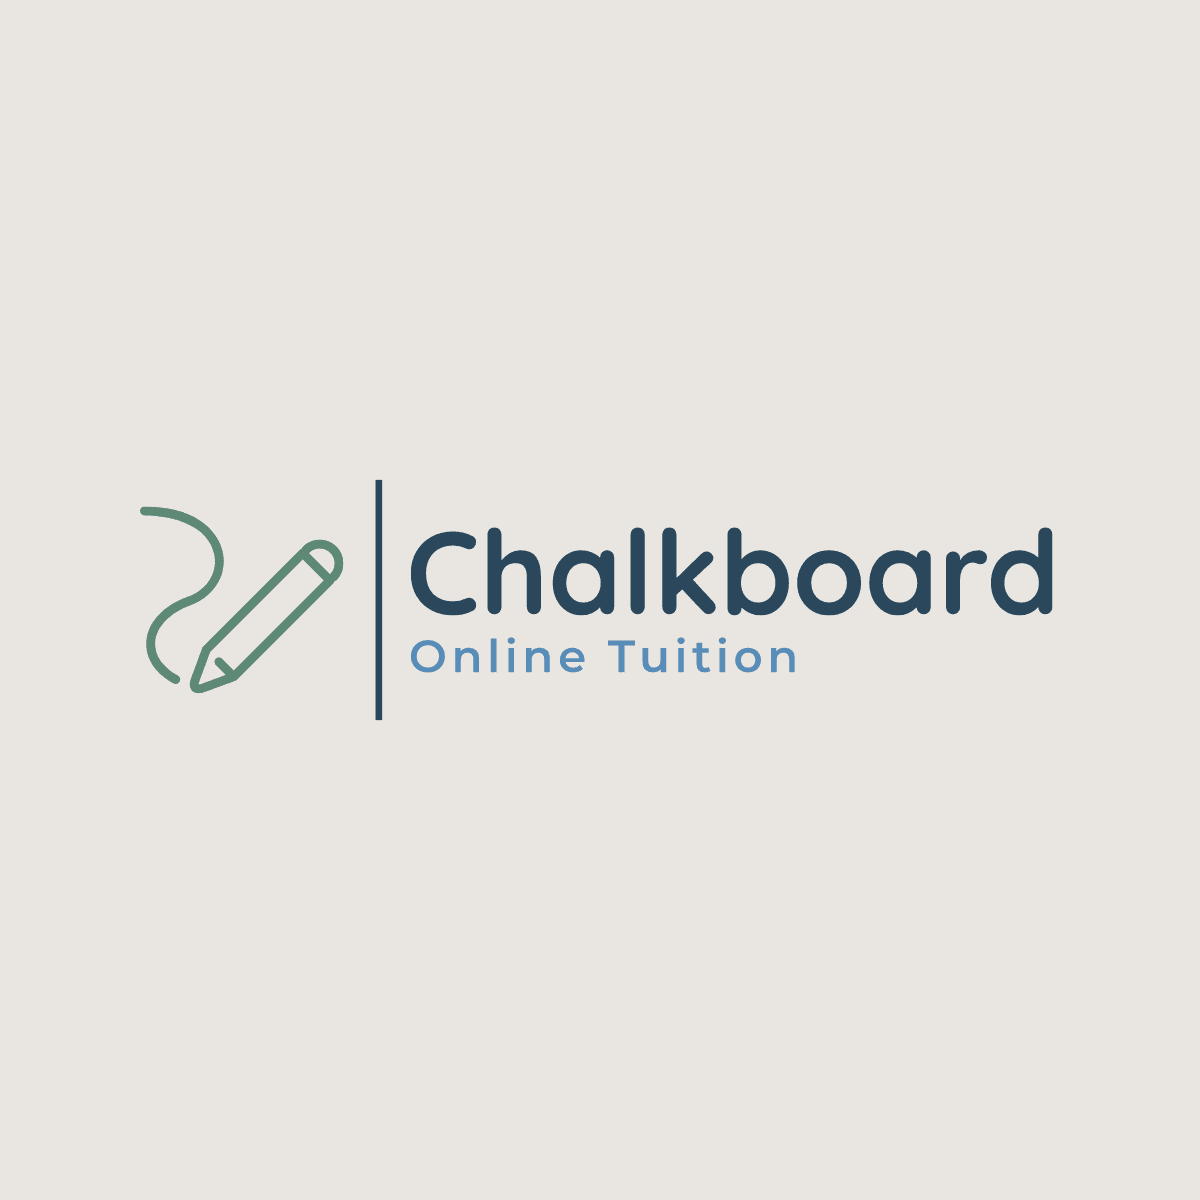 Chalkboard Tuition Logo